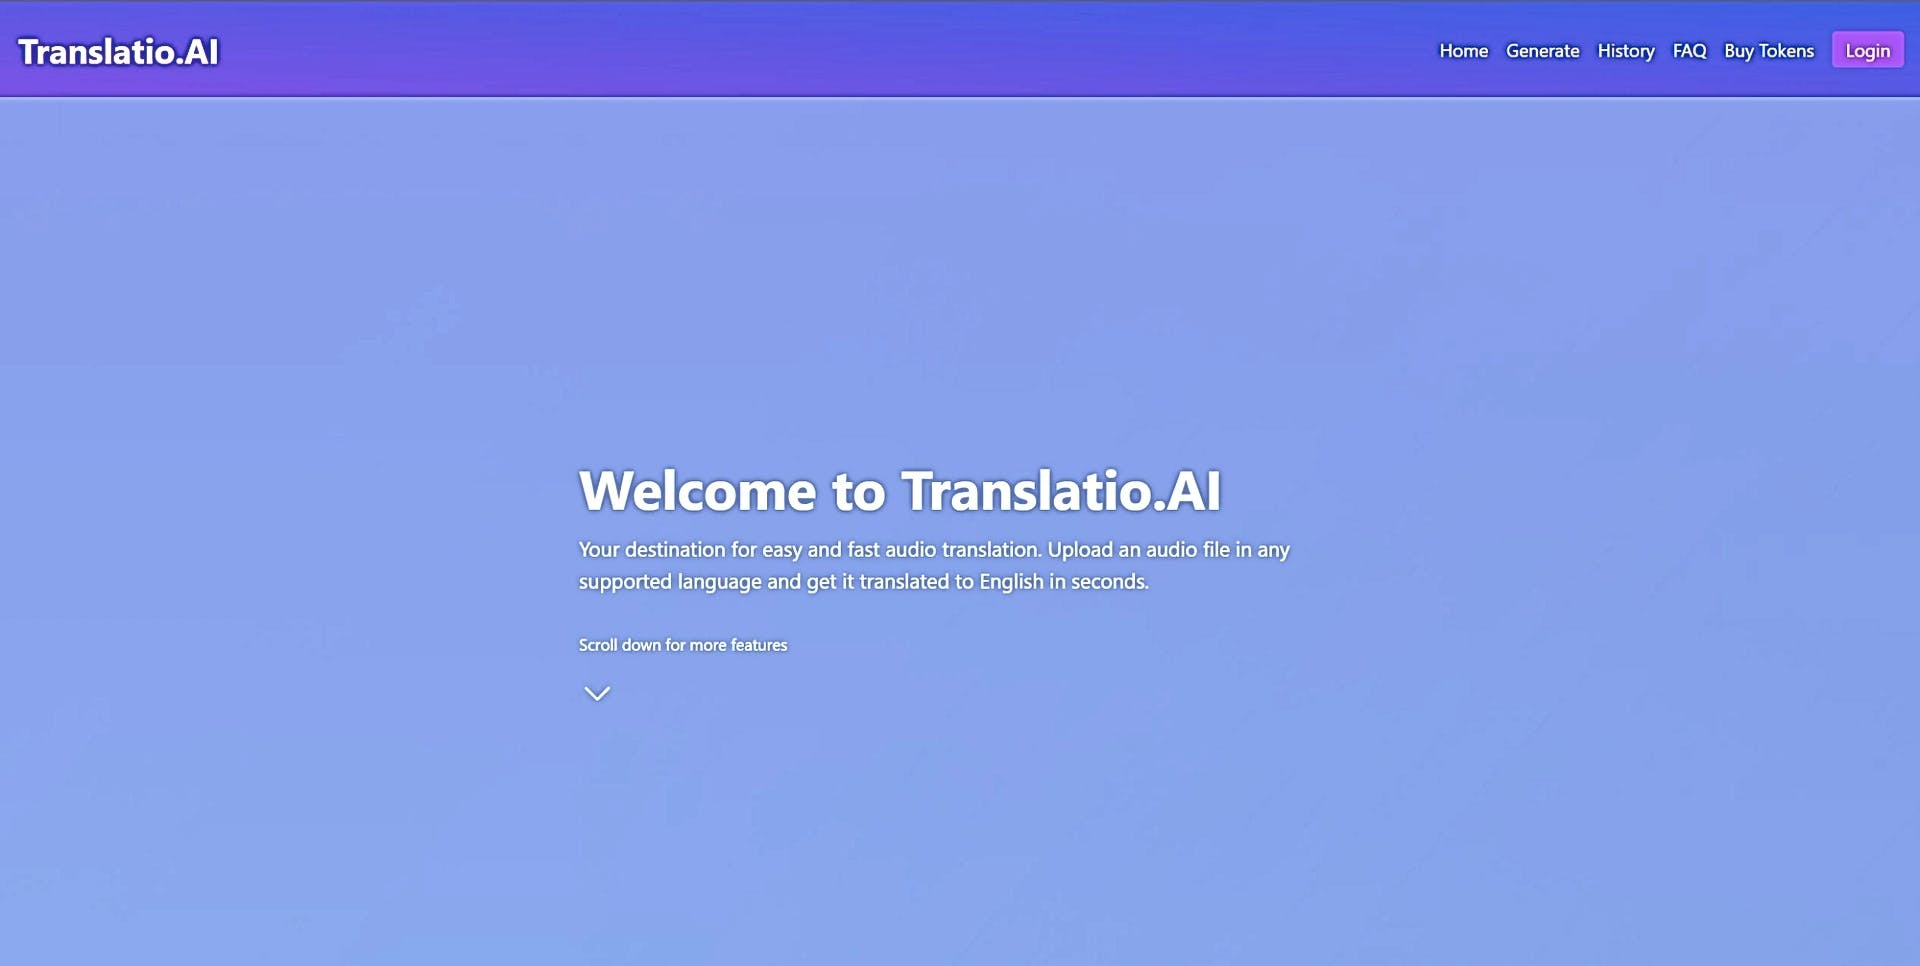 Translatio.AI featured